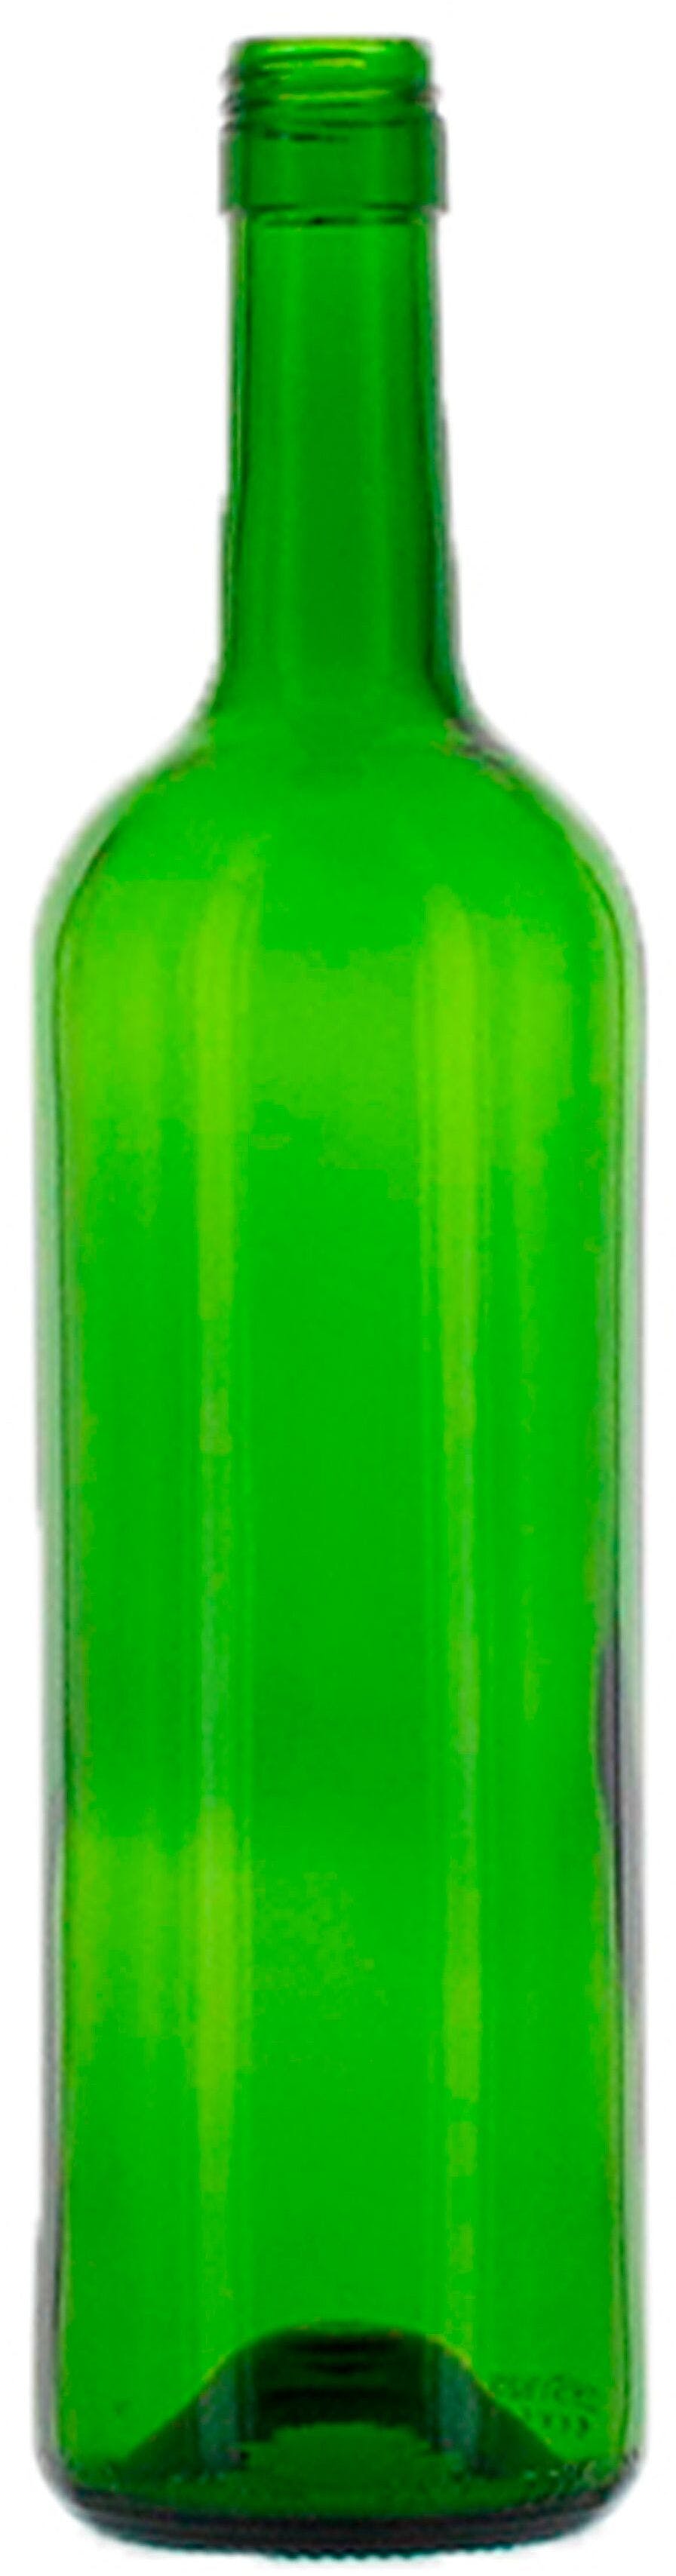 Bottle BORDOLESE  MED 750 ml BG-Screw